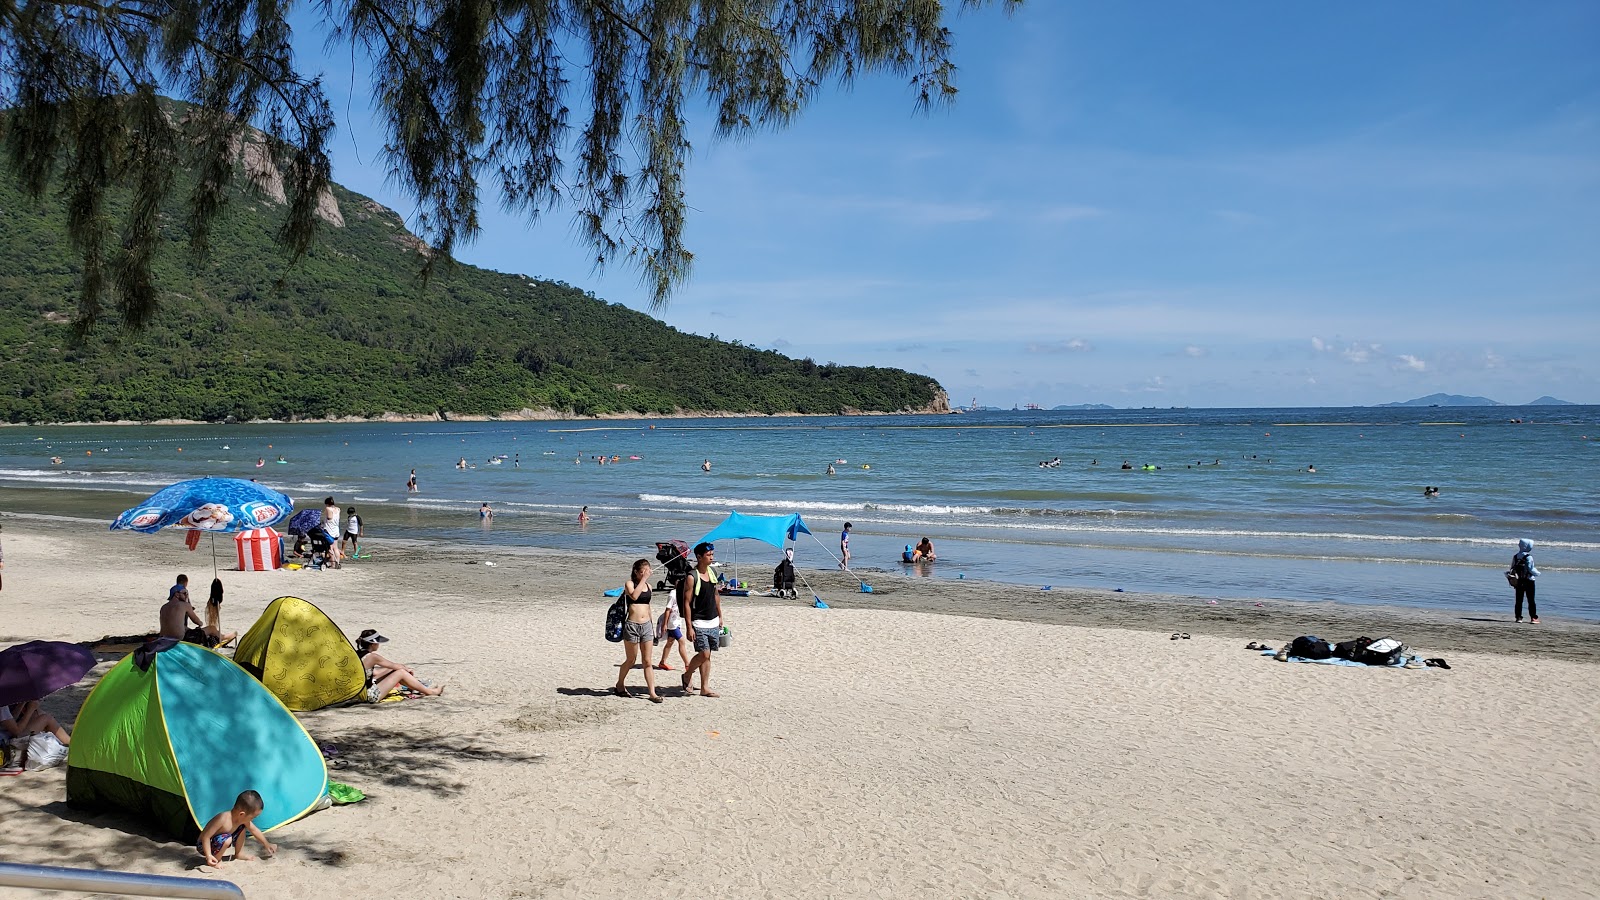 Zdjęcie Pui O Beach z powierzchnią jasny piasek